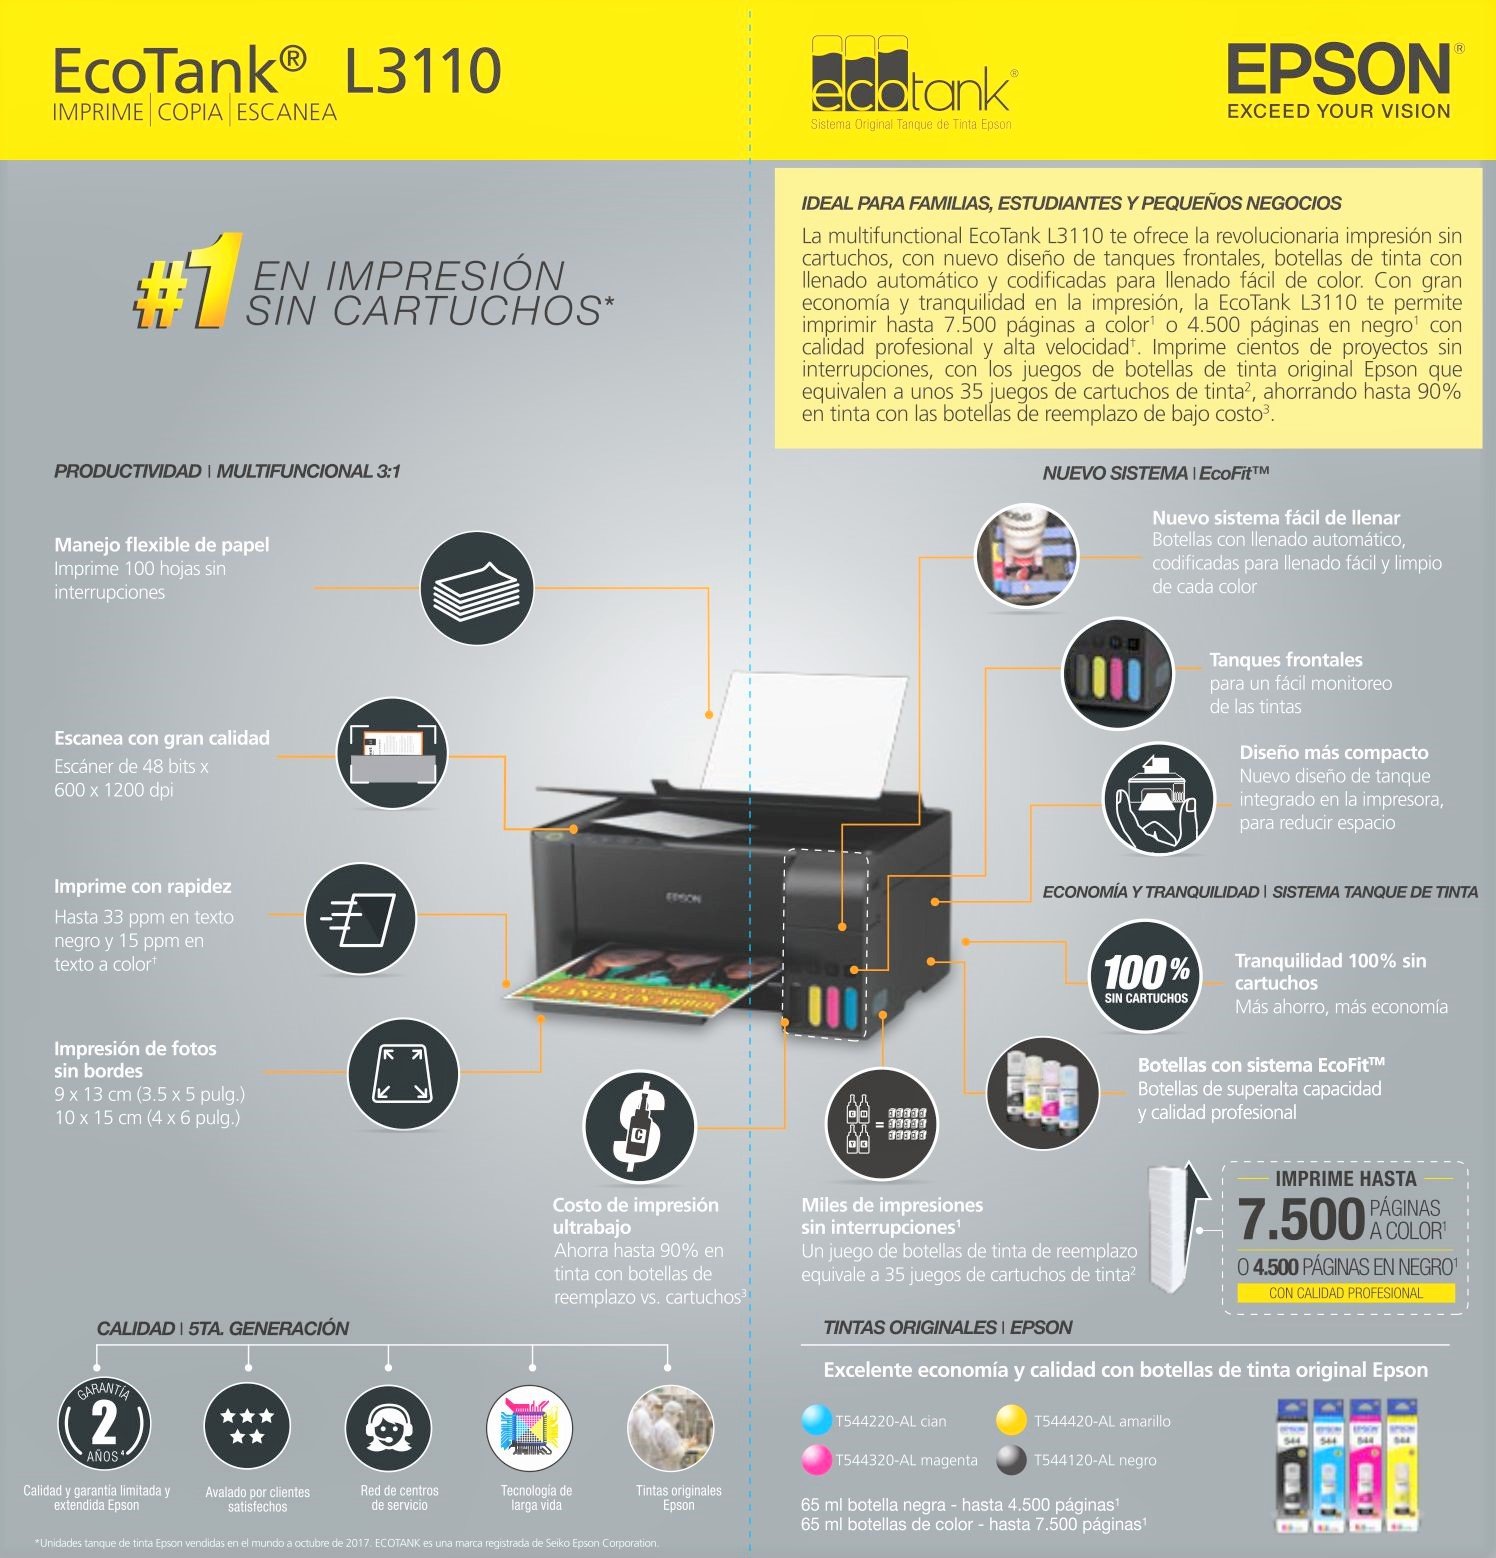 Impresora para Sublimación Epson L3110. CON TINTAS DE SUBLIMACION O PIGMENTADAS INCLUIDAS en Fluxi